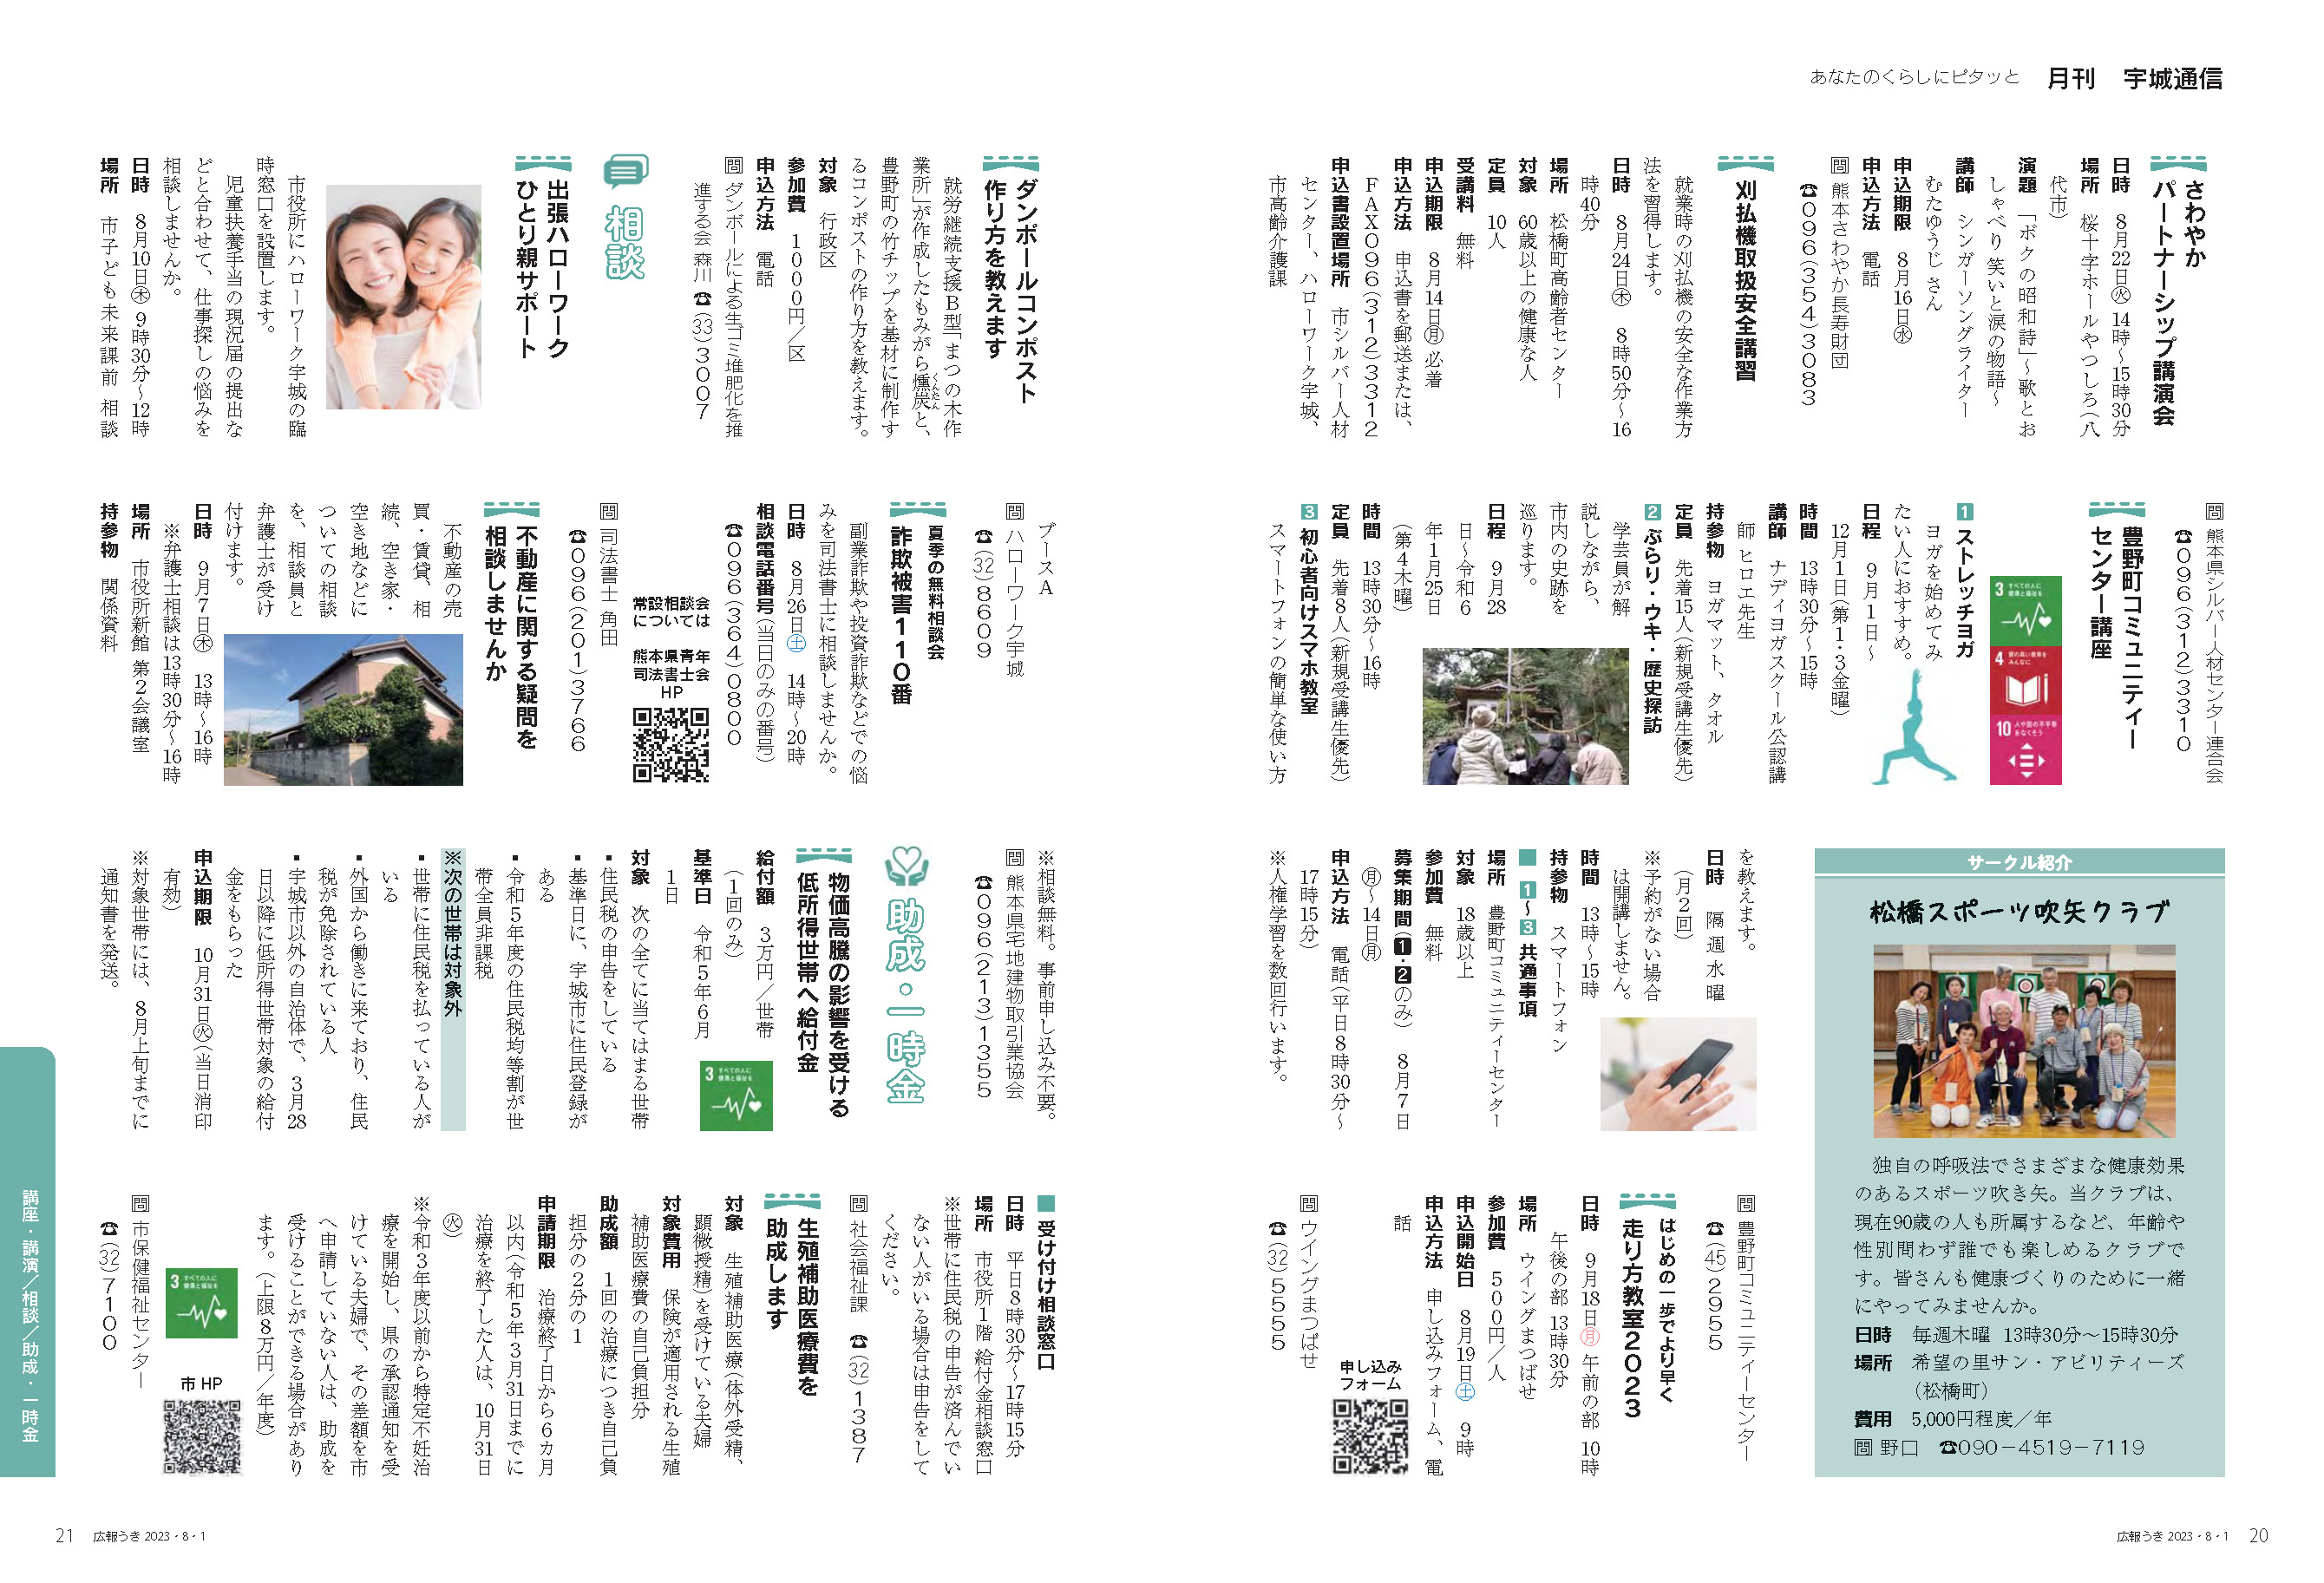 P20、P21 あなたのくらしにピタッと 月刊 宇城通信のページ画像、詳細はPDFファイルを参照ください。